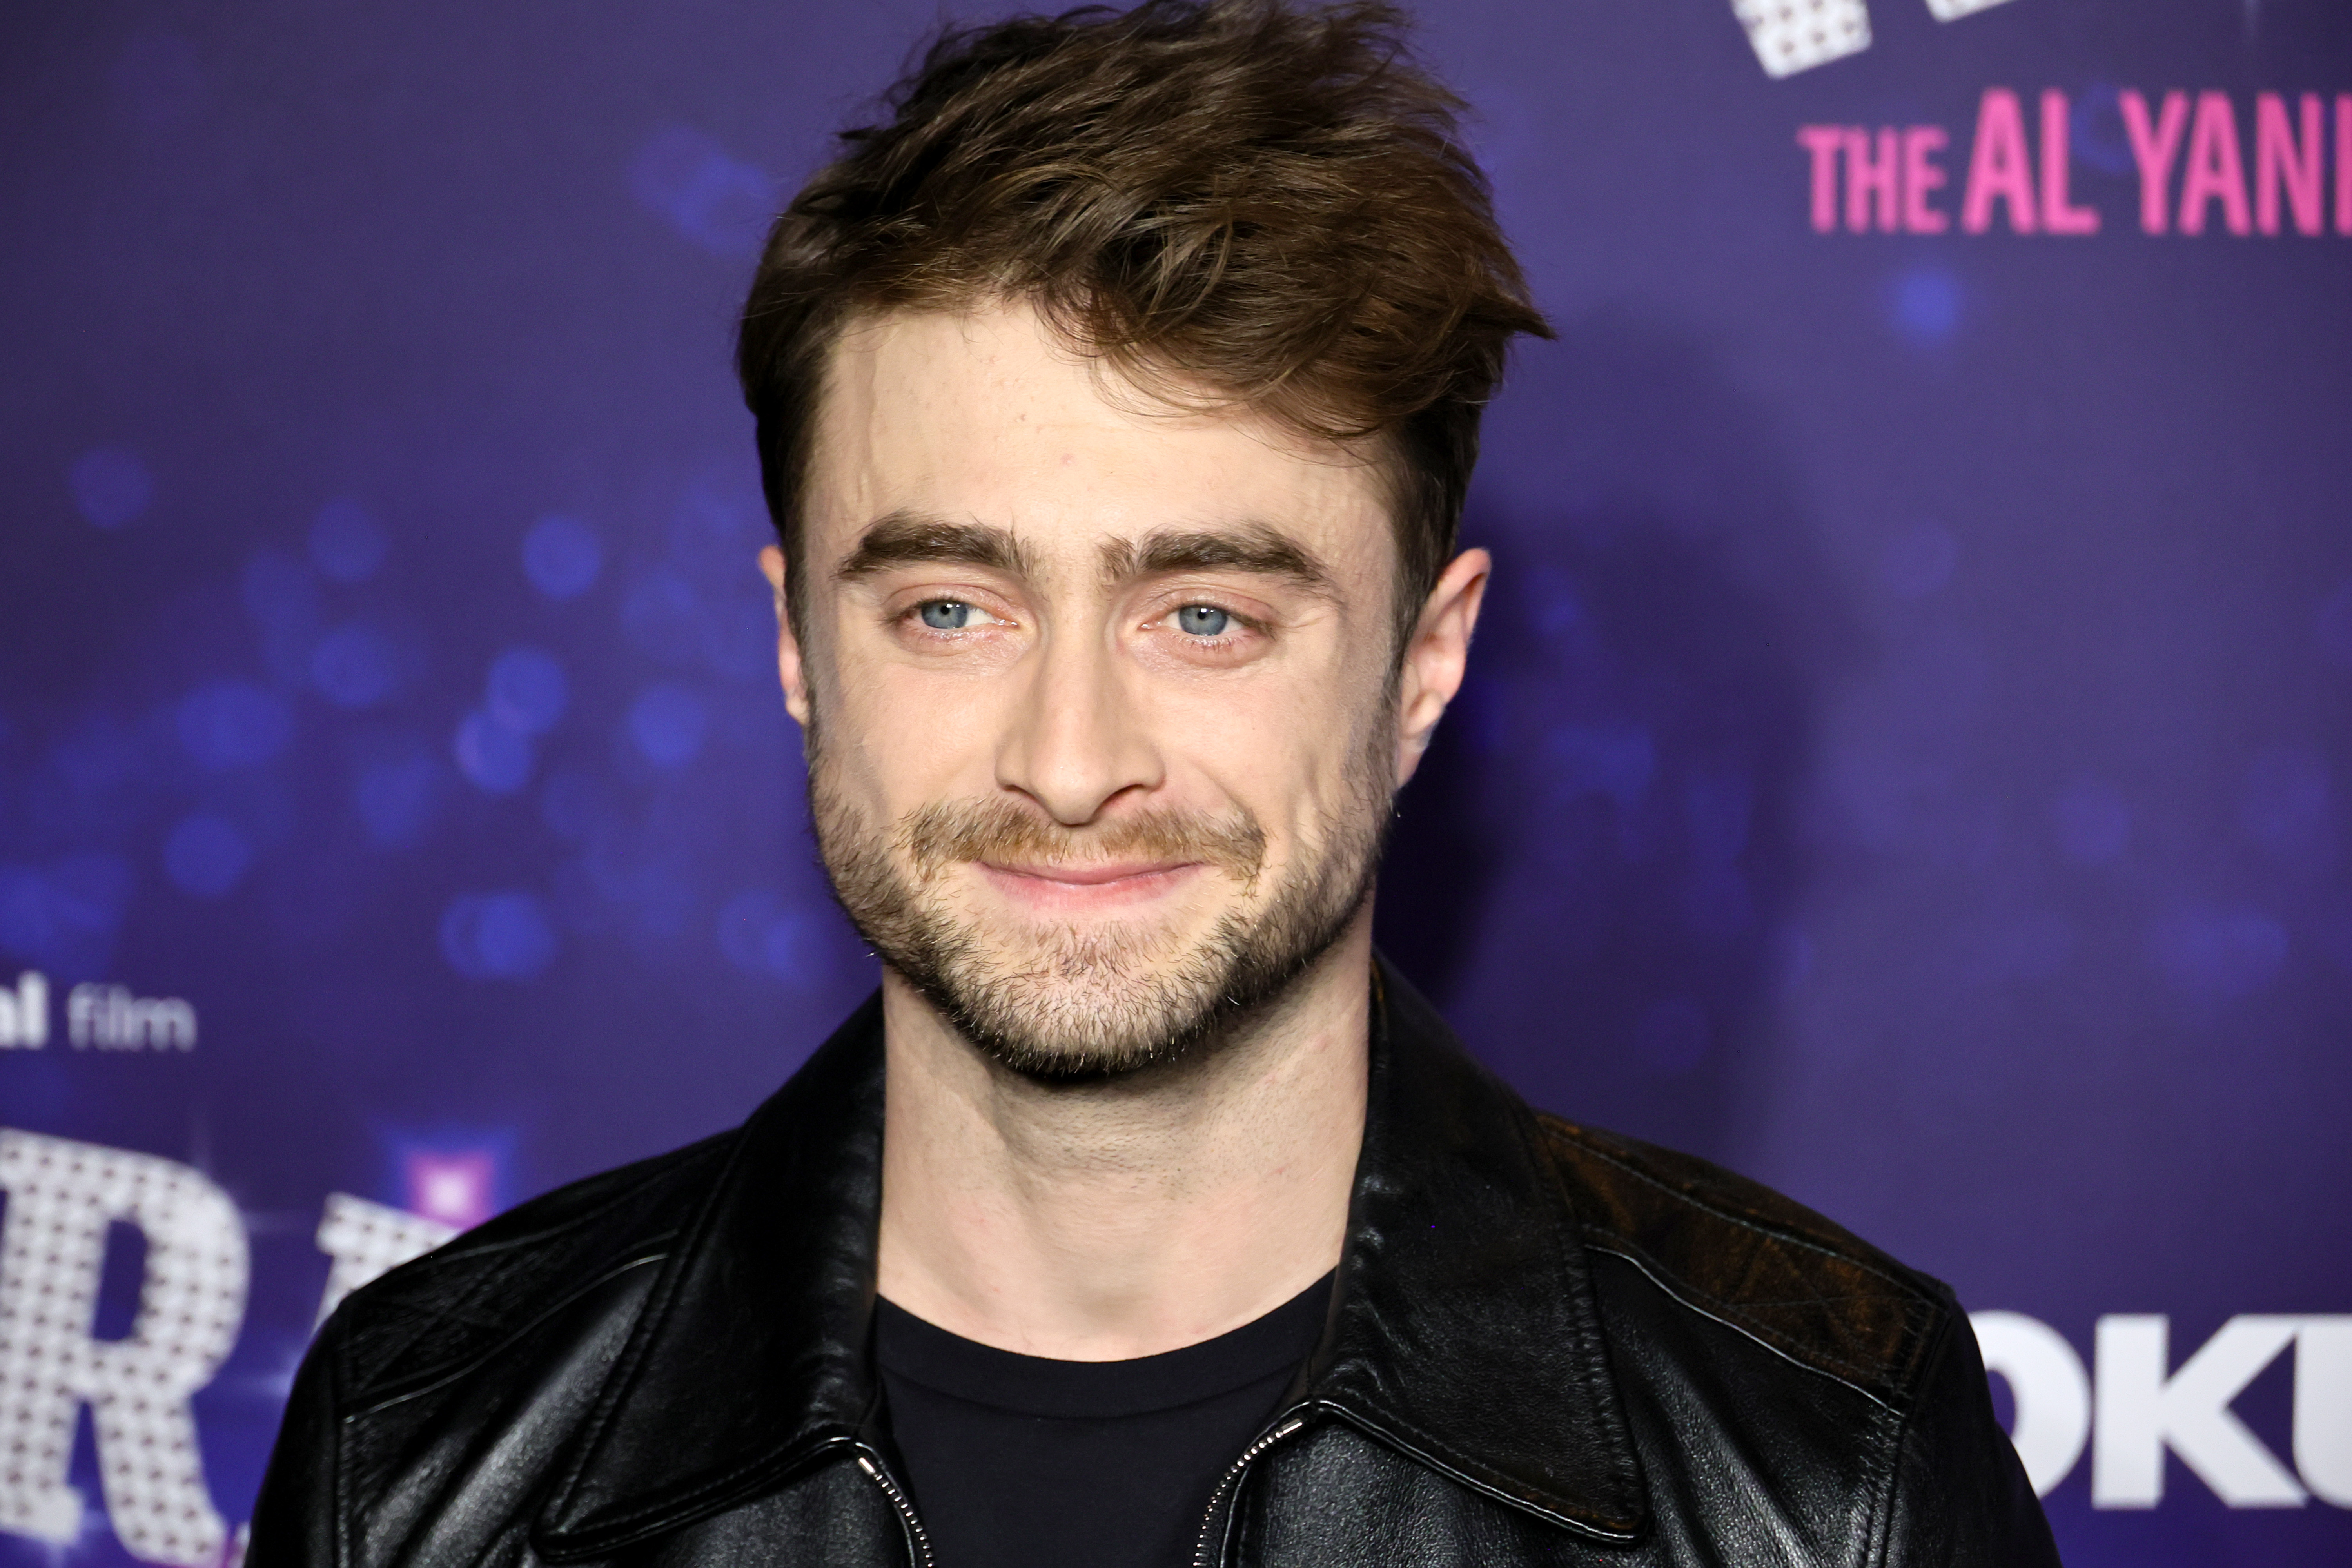 Los secretos de Daniel Radcliffe: la curiosa alergia que lo complicó en “Harry Potter” y por qué le cuesta atarse los cordones